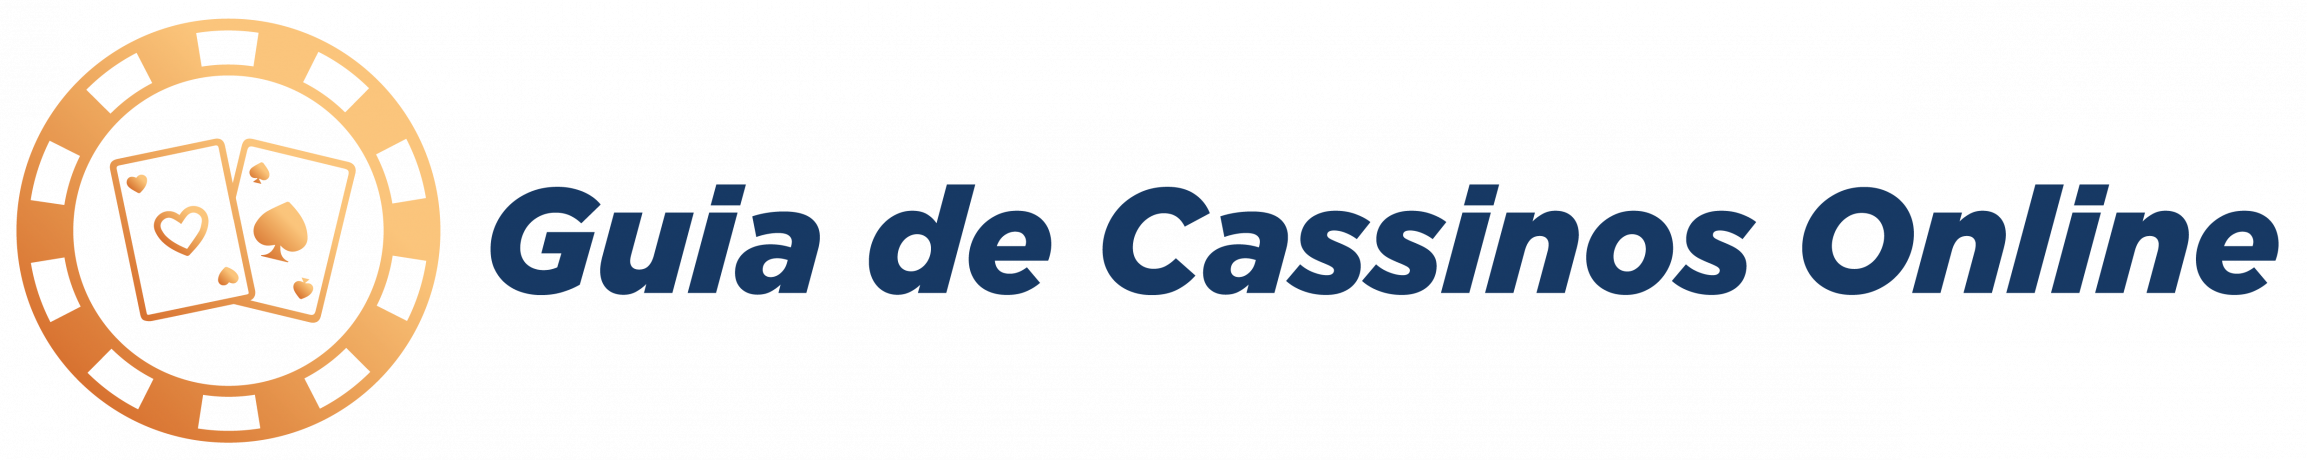 Guia de Cassinos Online do Brasil